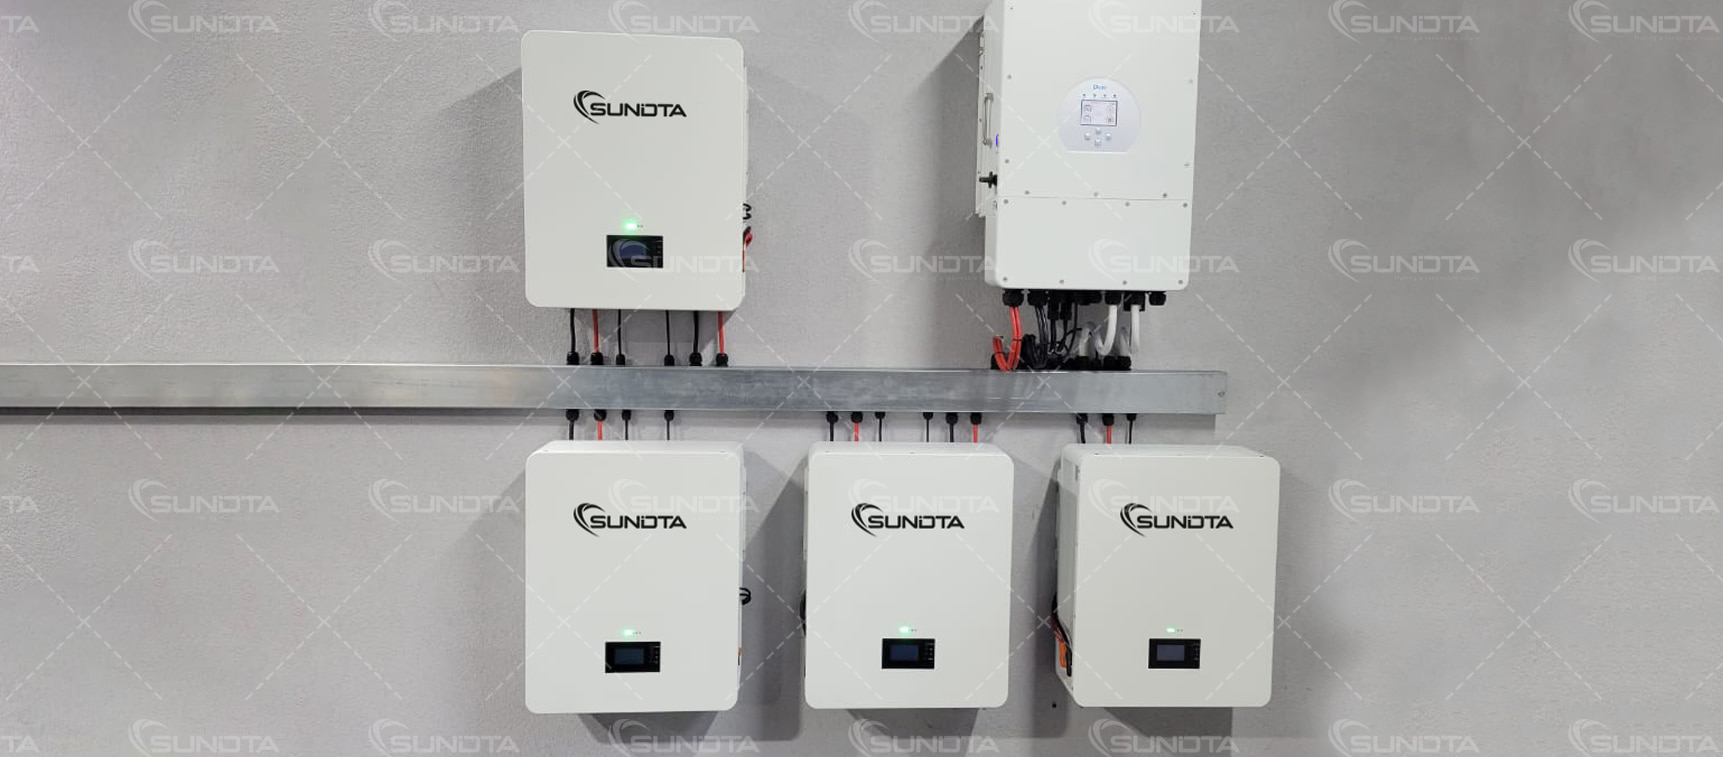 Se completó el sistema de almacenamiento de energía de 20,48 kwh instalado por el cliente ucraniano de SUNDTA
        